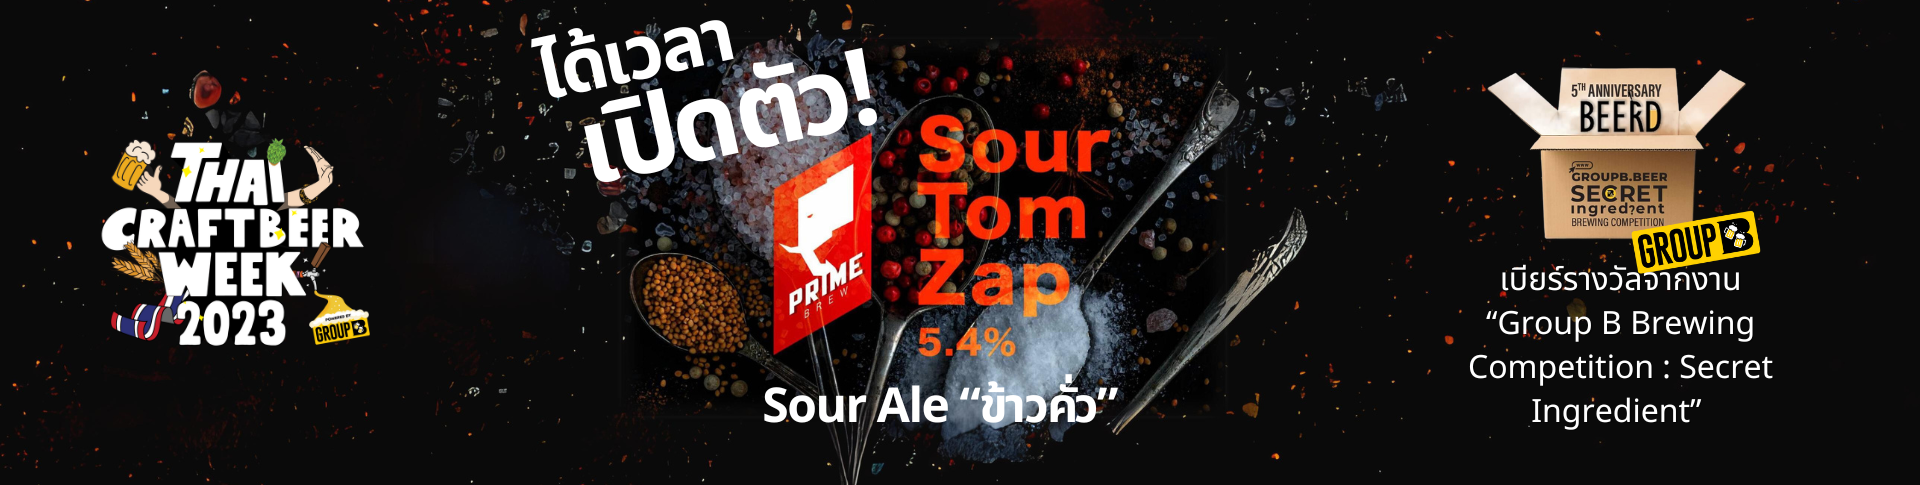 เปิดตัวเบียร์ “SourTom Zap”Sour Ale ข้าวคั่ว @39 Craft